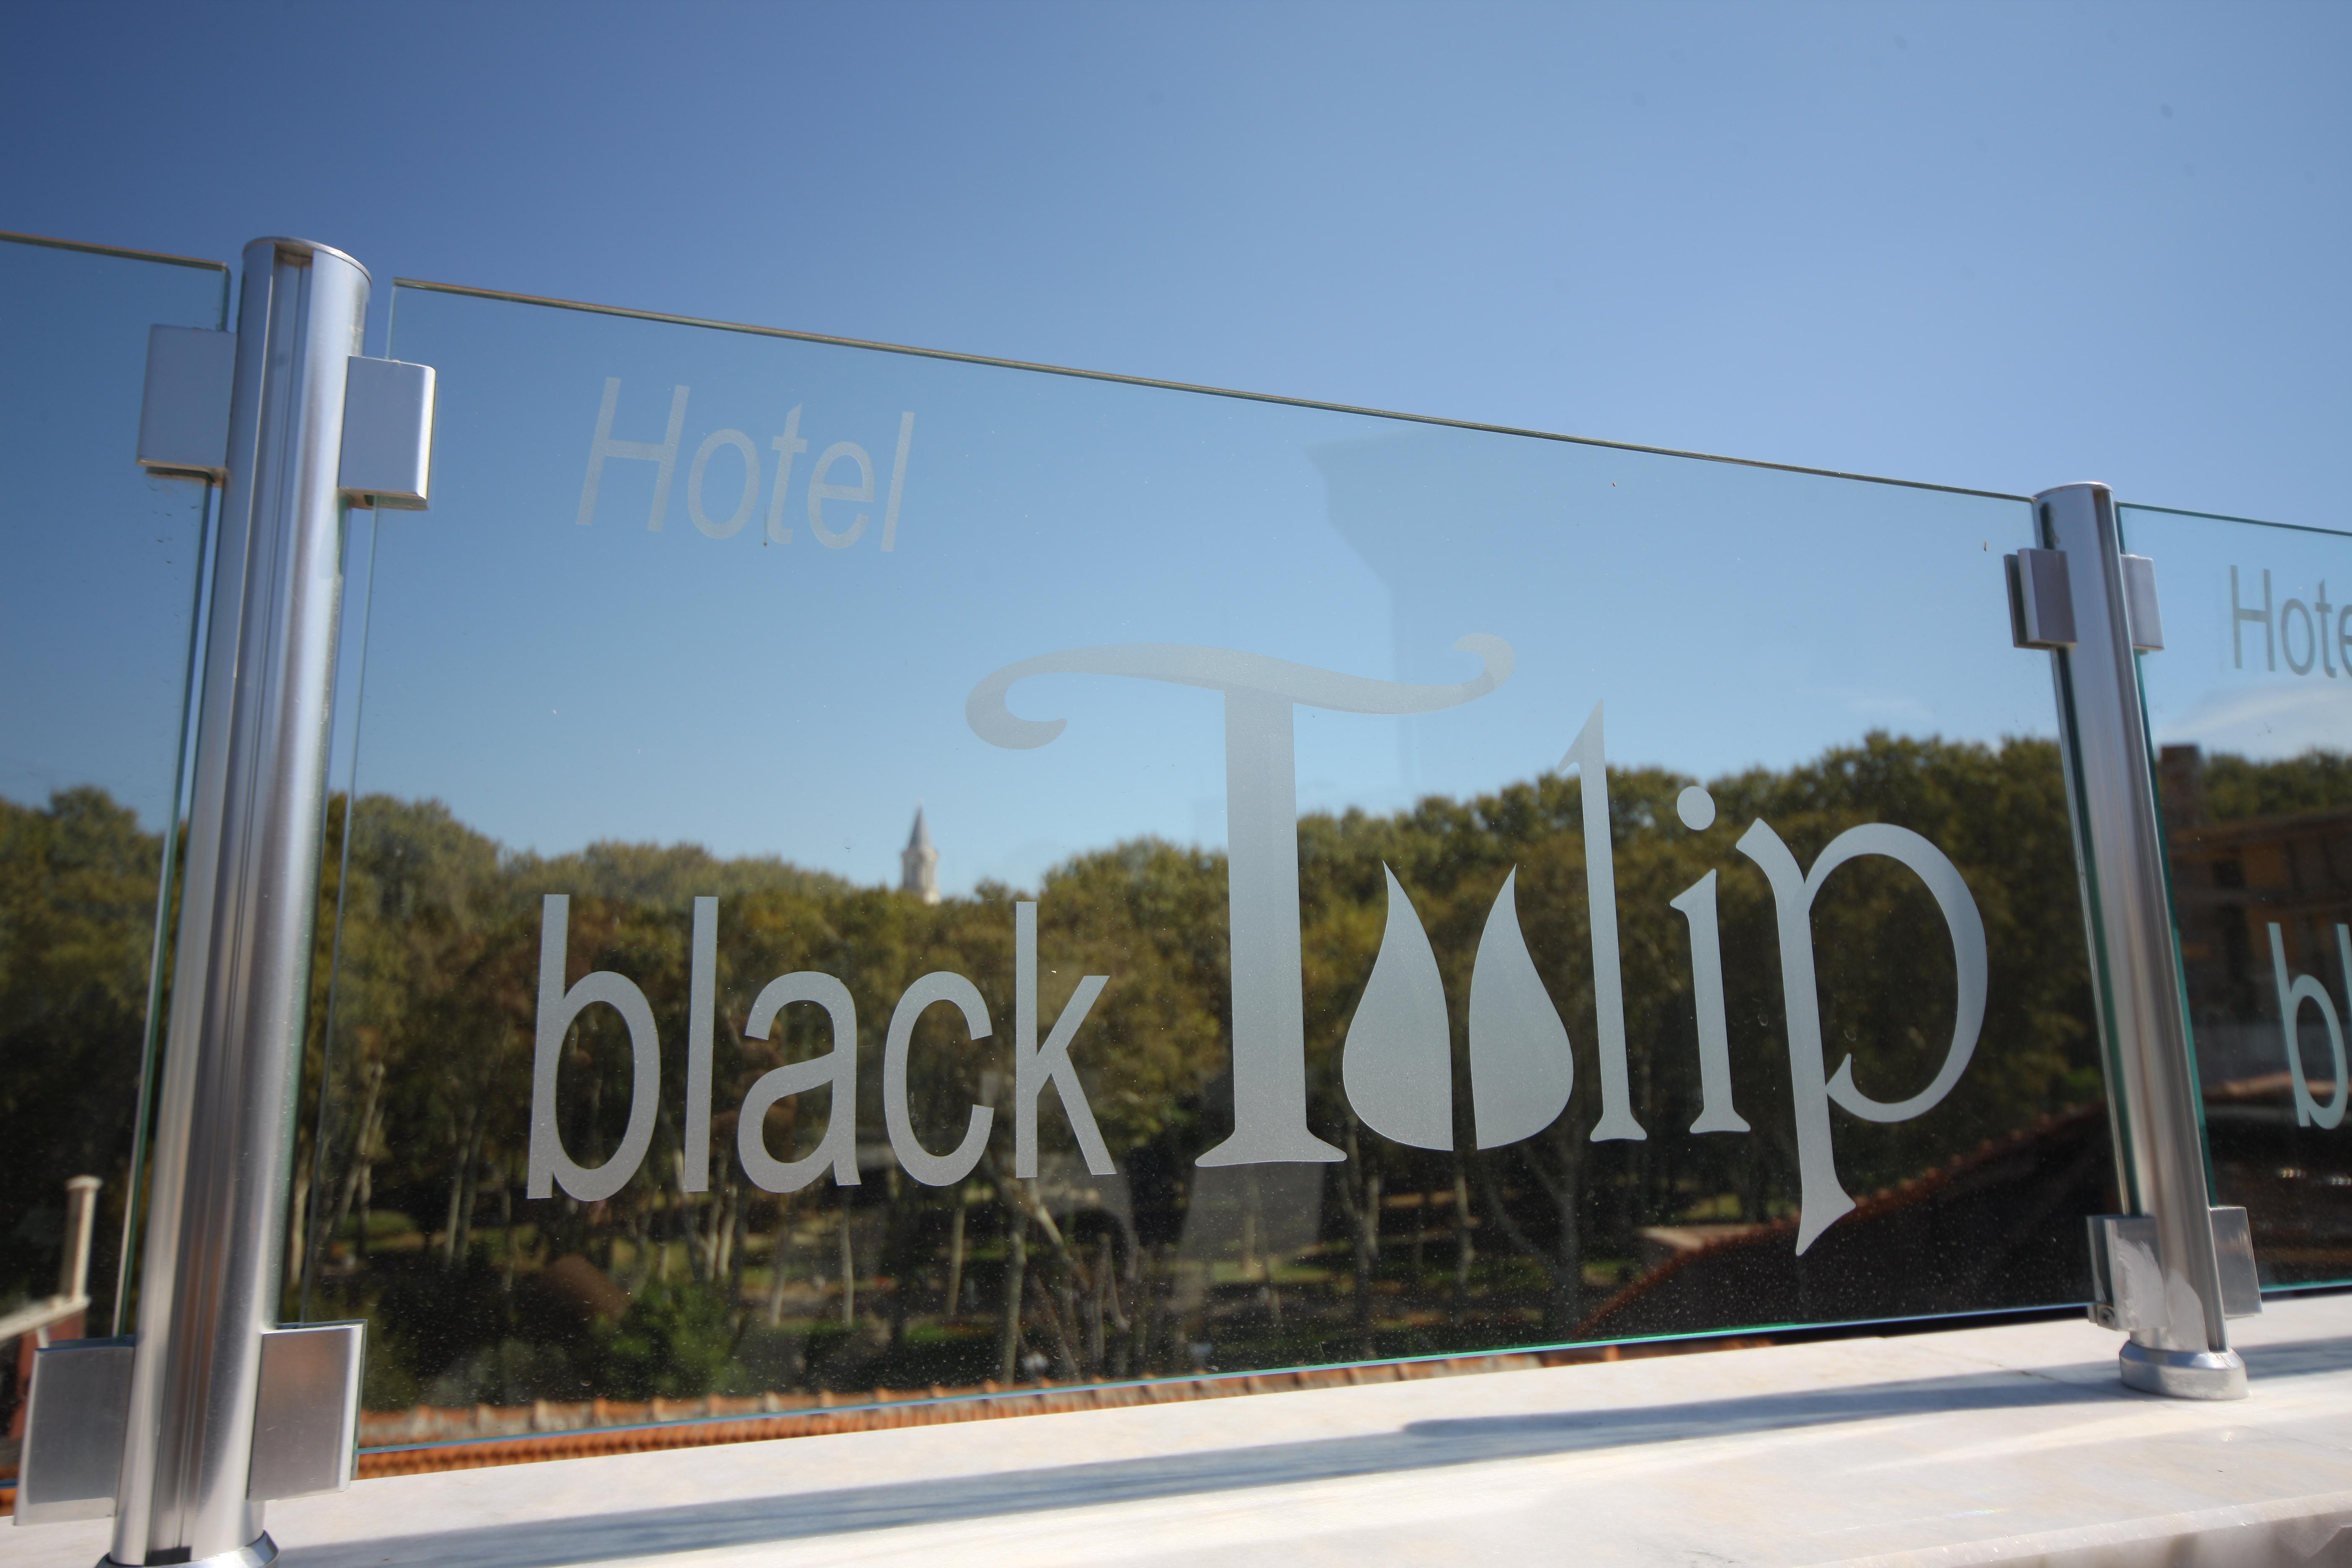 Hotel Black Tulip